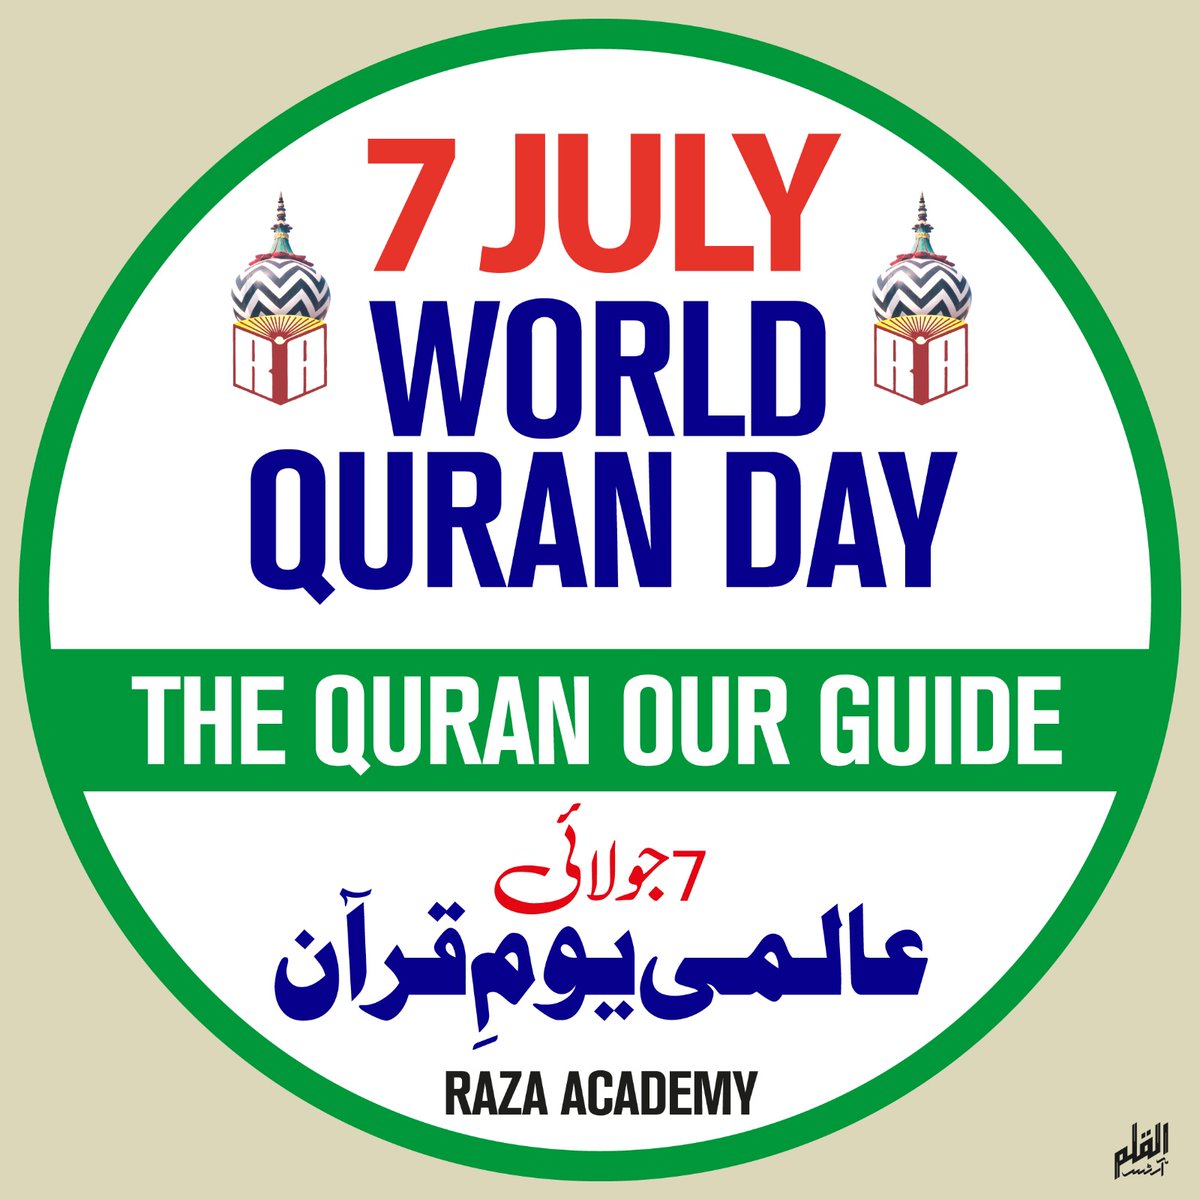 स्वीडन में पवित्र कुरान जलाने के विरोध में 7 जुलाई 2023 को दुनिया भर में #WorldQuranDay मनाया जाएगा - #RazaAcademy 

#SwedenTheEnemyOfPeace